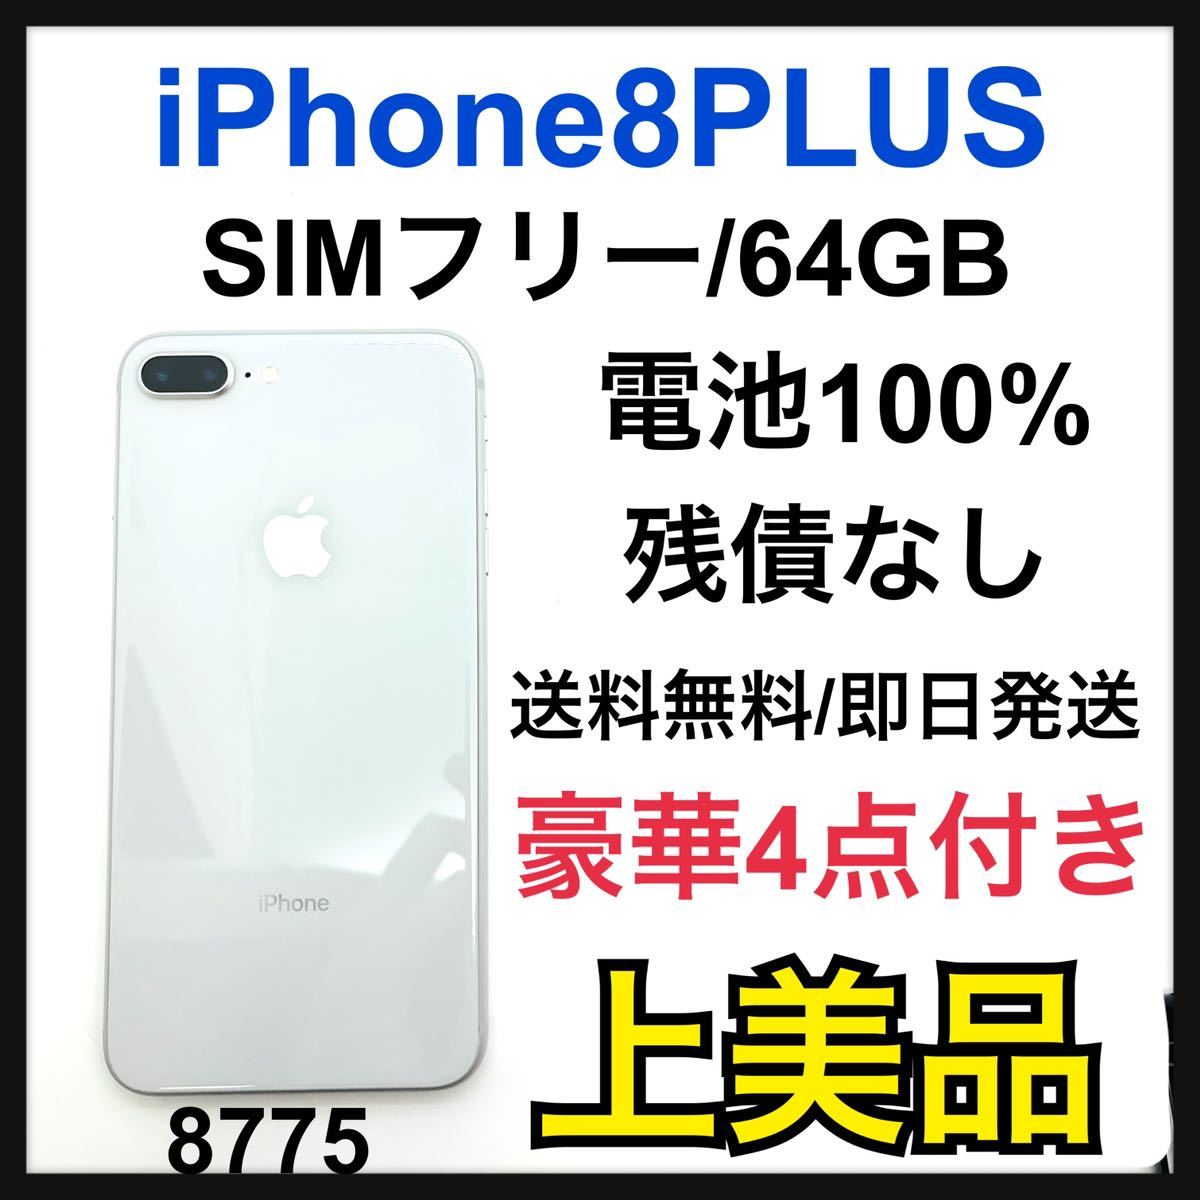 A 100% iPhone 8 Plus Silver 64 GB SIMフリー スマホ スマホ 